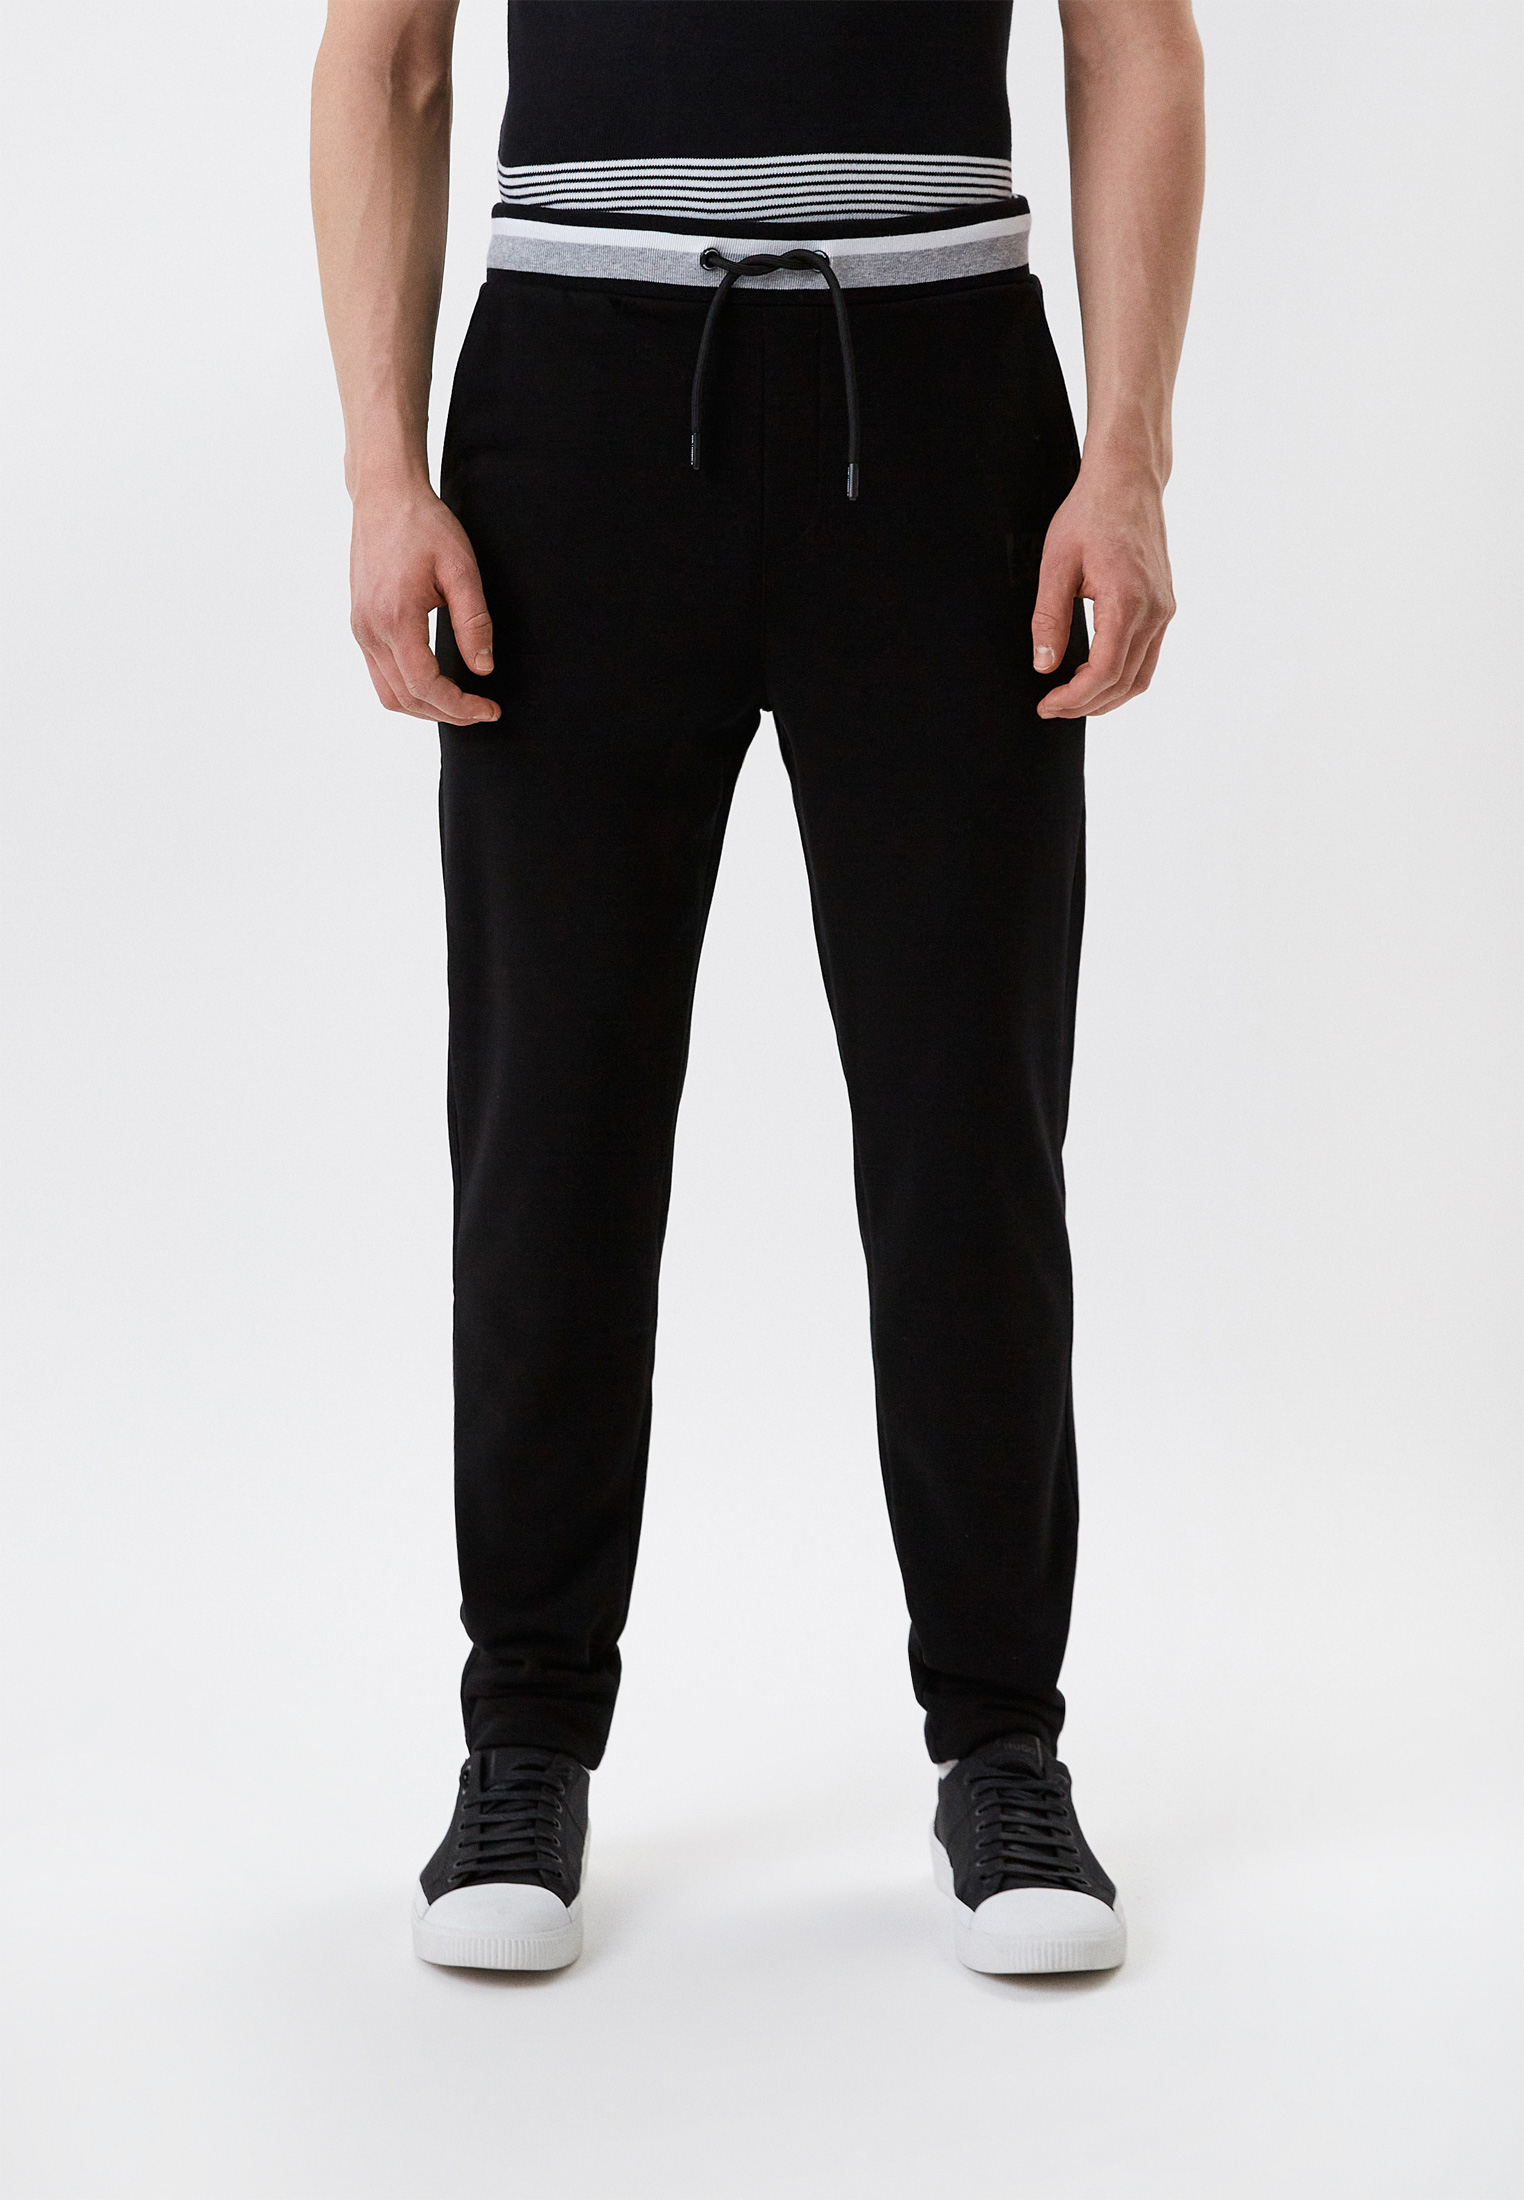 Мужские спортивные брюки Karl Lagerfeld (Карл Лагерфельд) 521900-705082: изображение 1